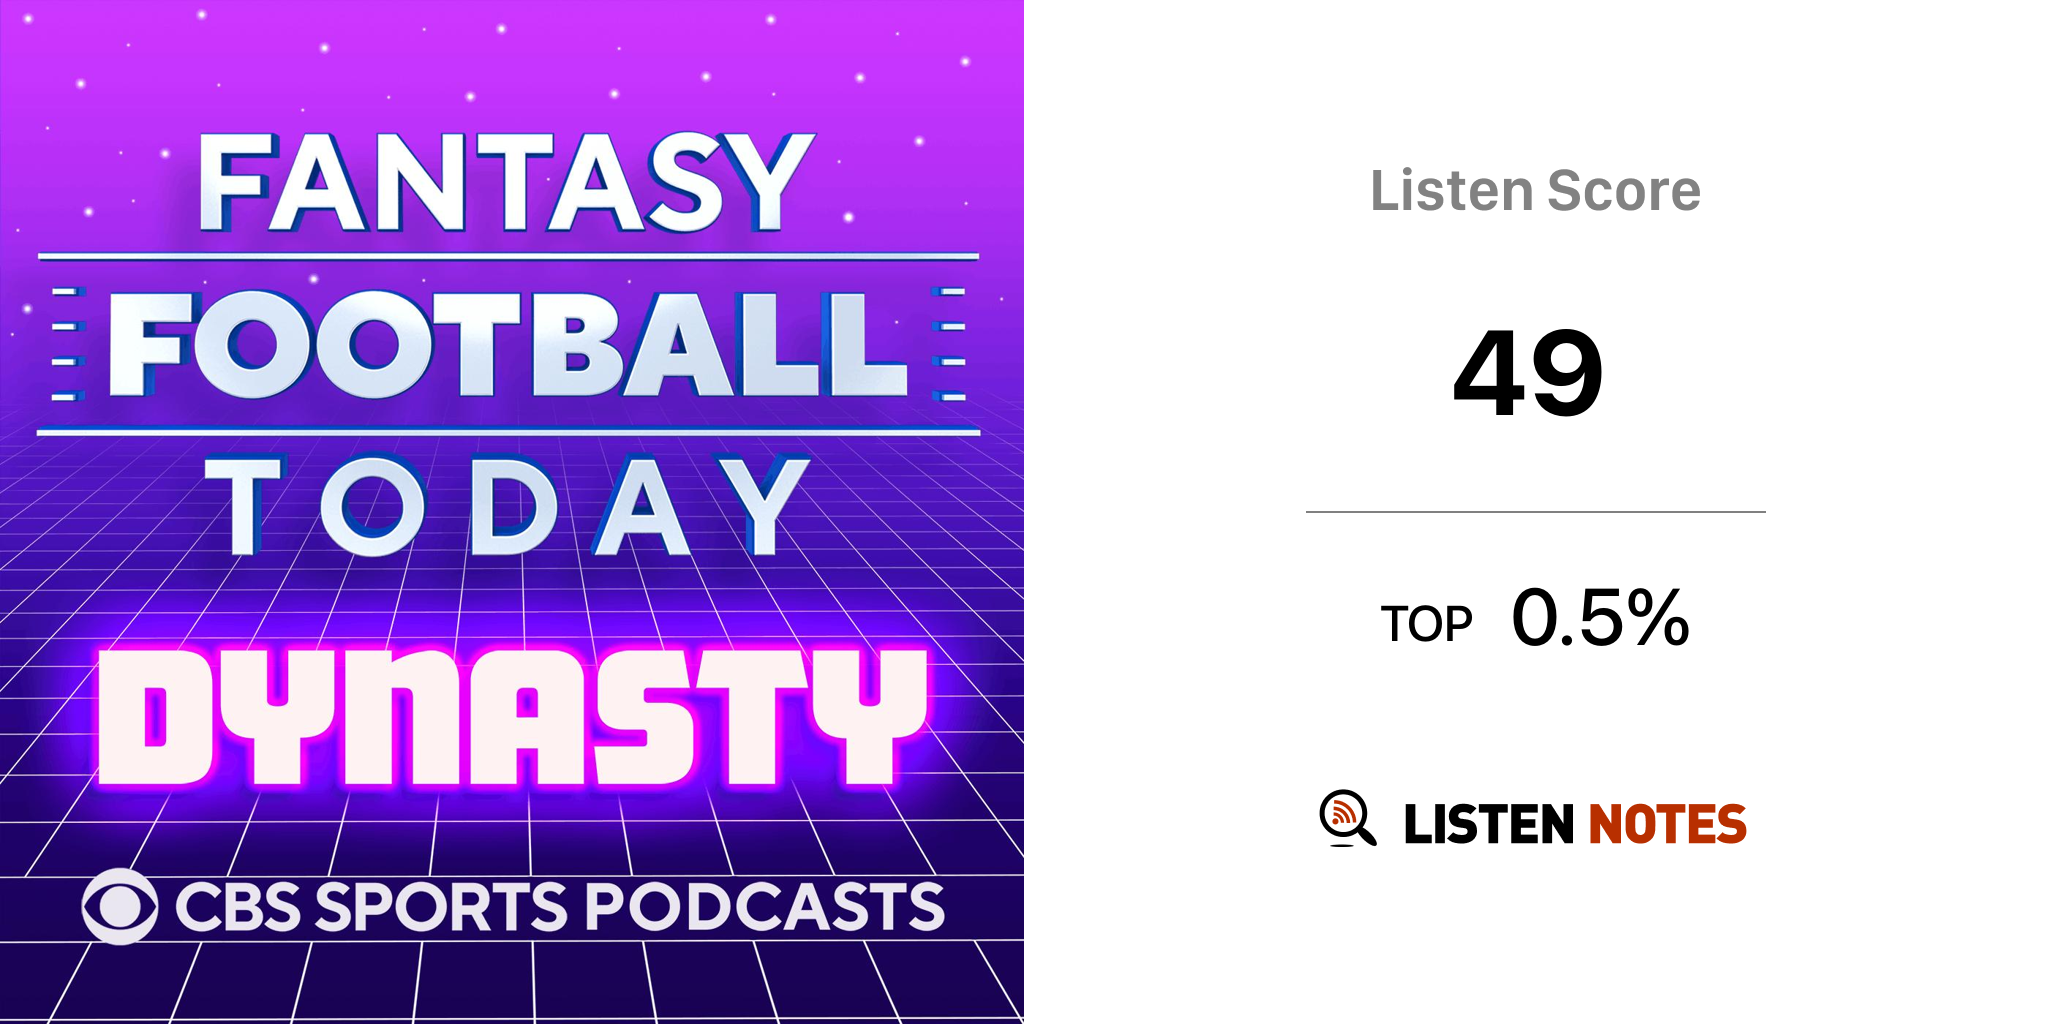 Fantasy Football Today Dynasty (podcast) - CBS Sports, Fantasy Football  Dynasty, Dynasty Fantasy Football, FFT Dynasty, Fantasy Football, Dynasty,  NFL